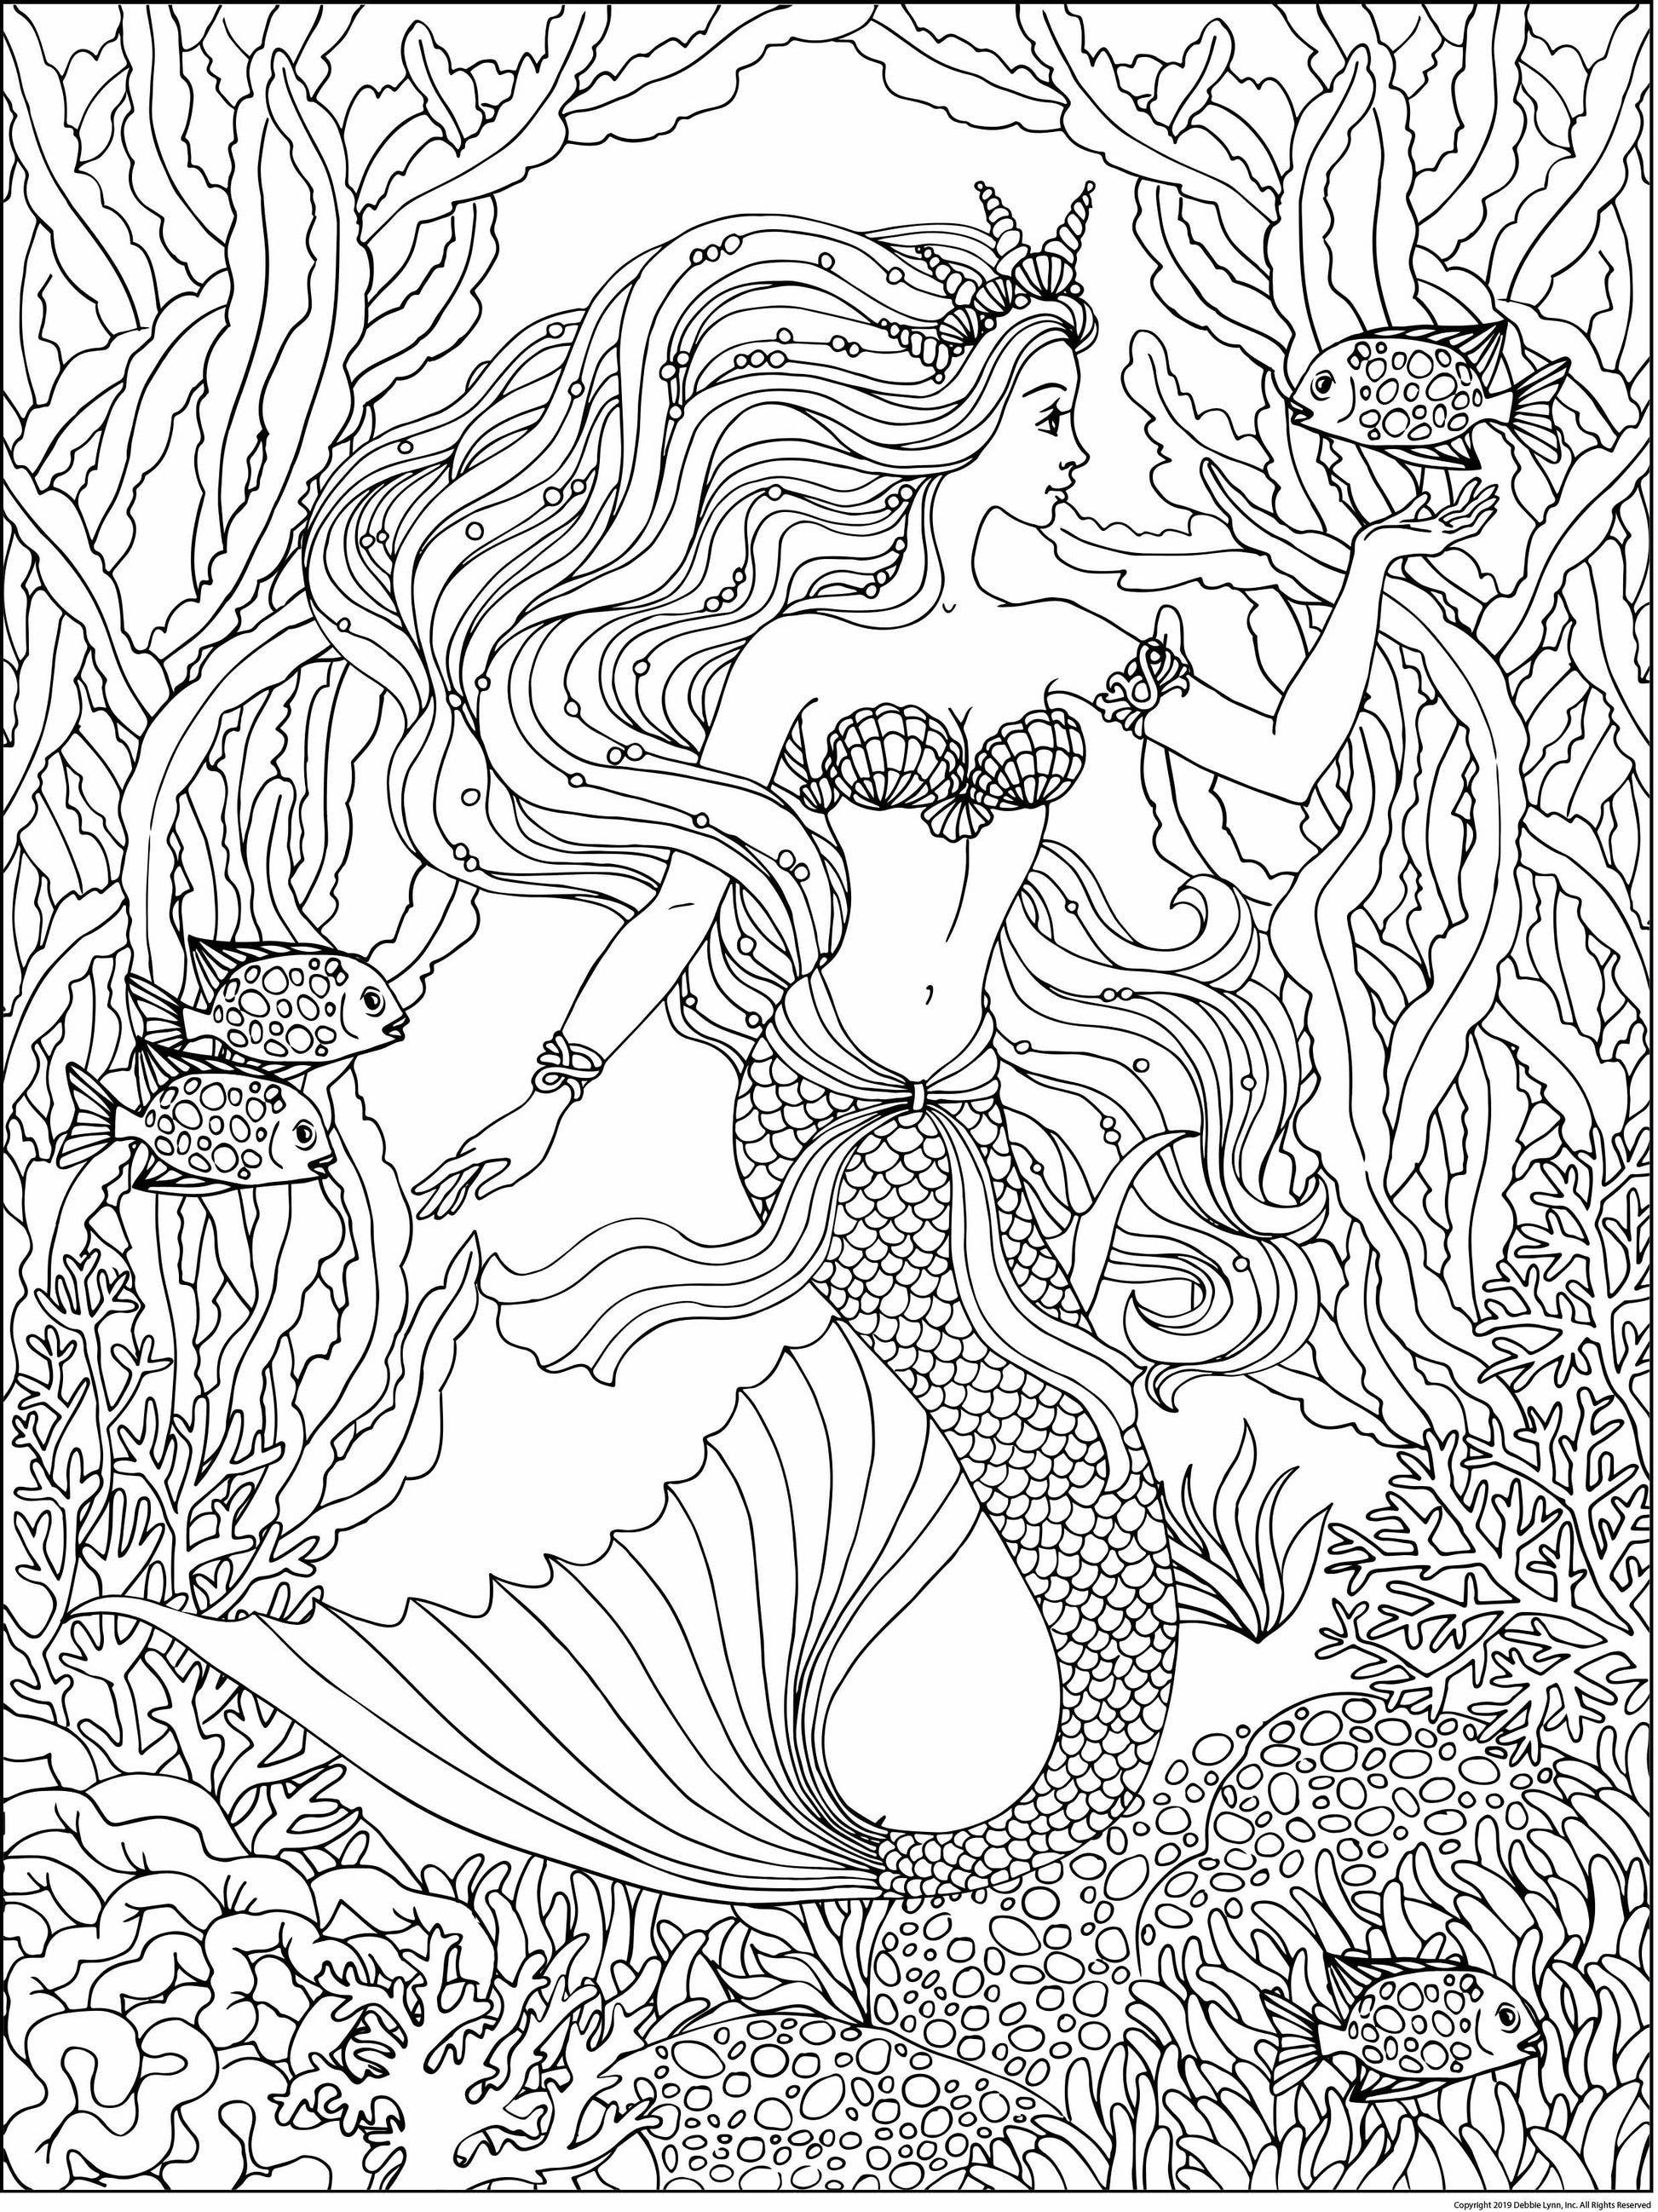 Mermaid Velvet Poster Set*